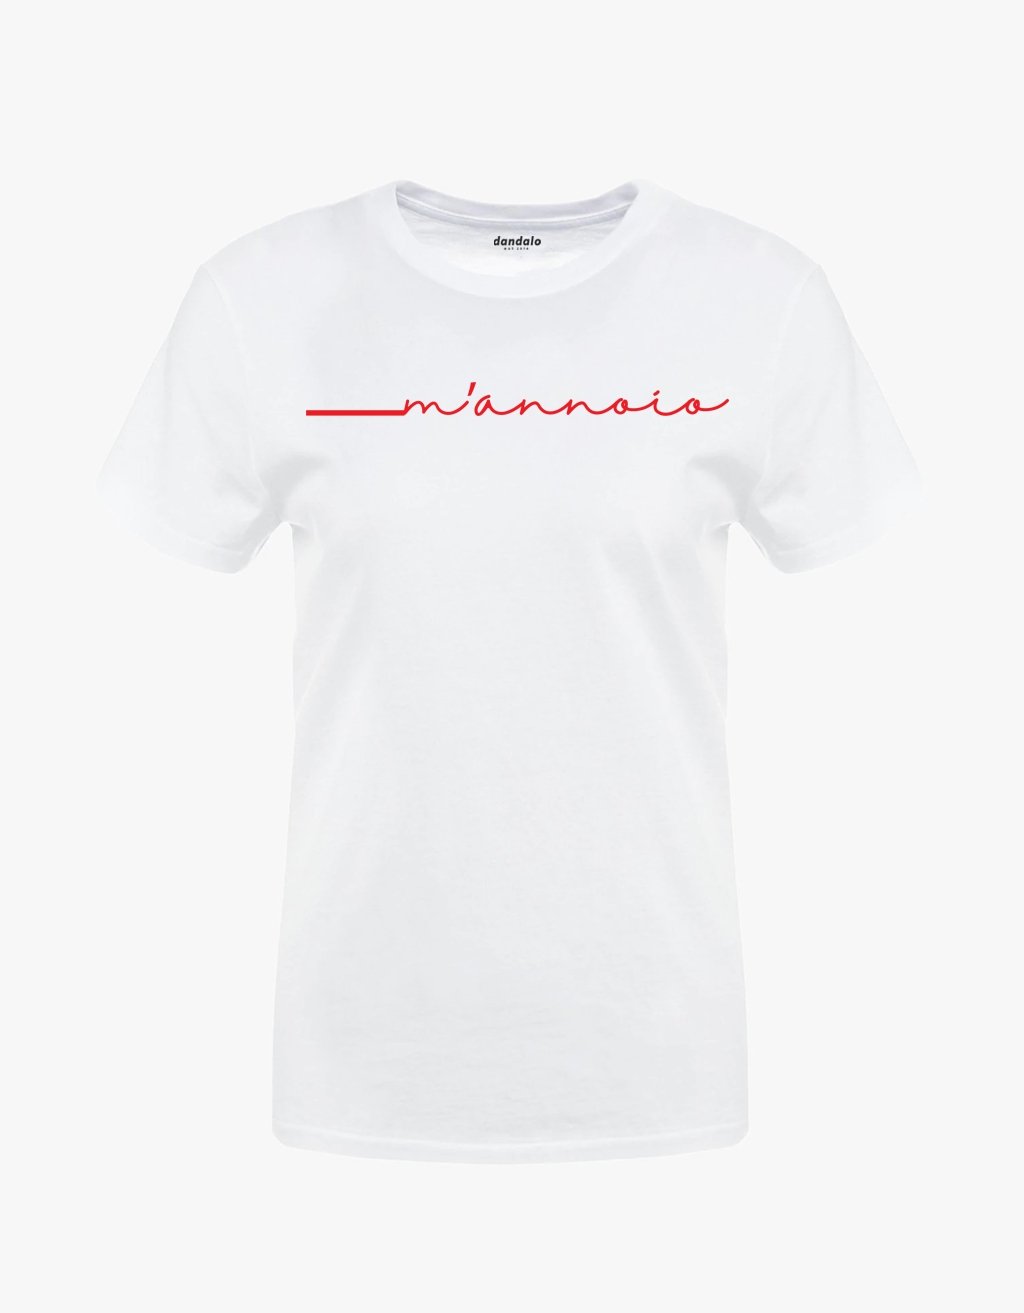 T-Shirt Donna "M'annoio" - dandalo